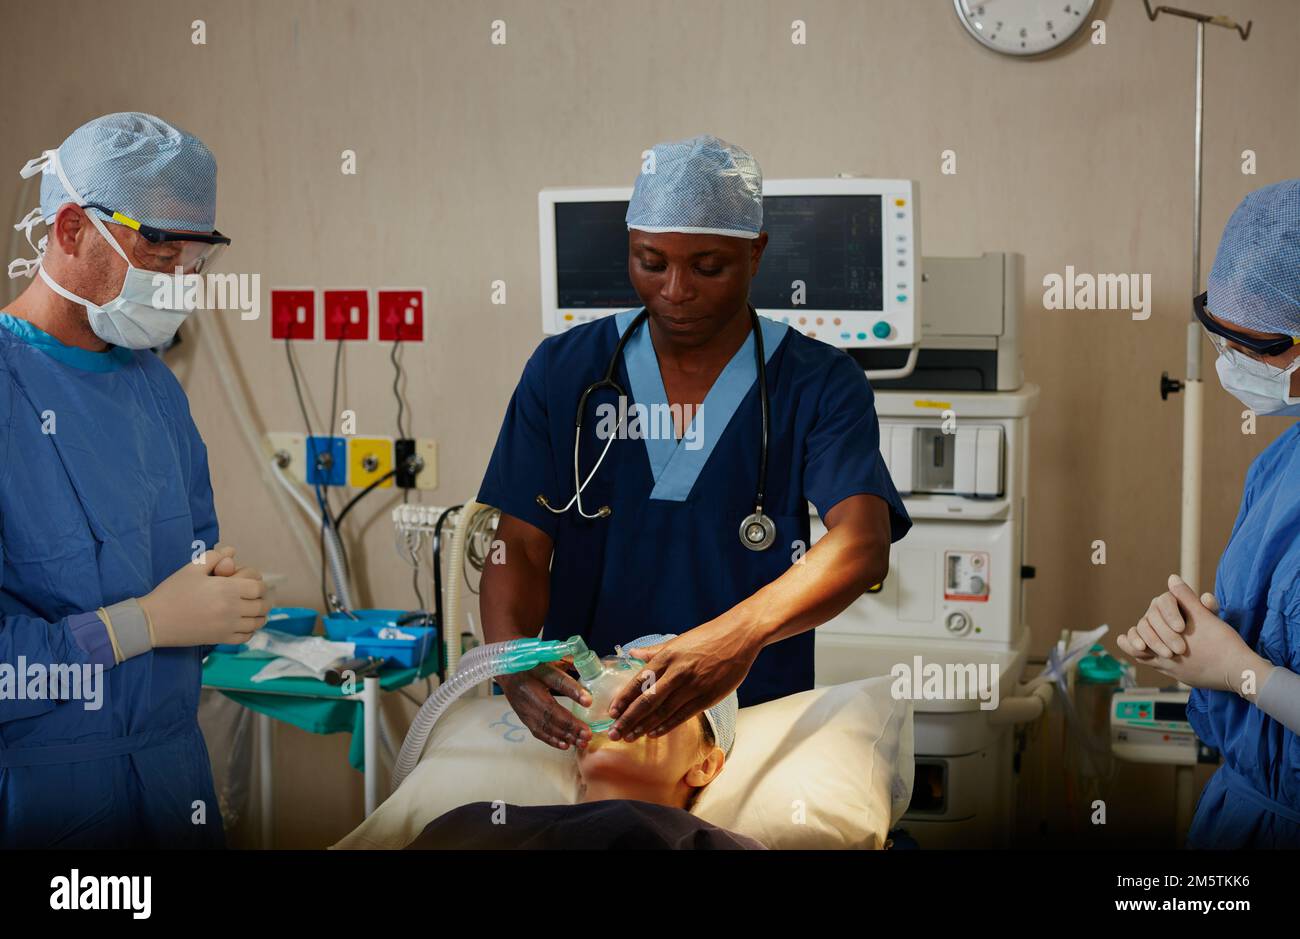 Traiter le patient avec le plus grand soin. un chirurgien administrant un anesthésique à un patient avant sa chirurgie. Banque D'Images